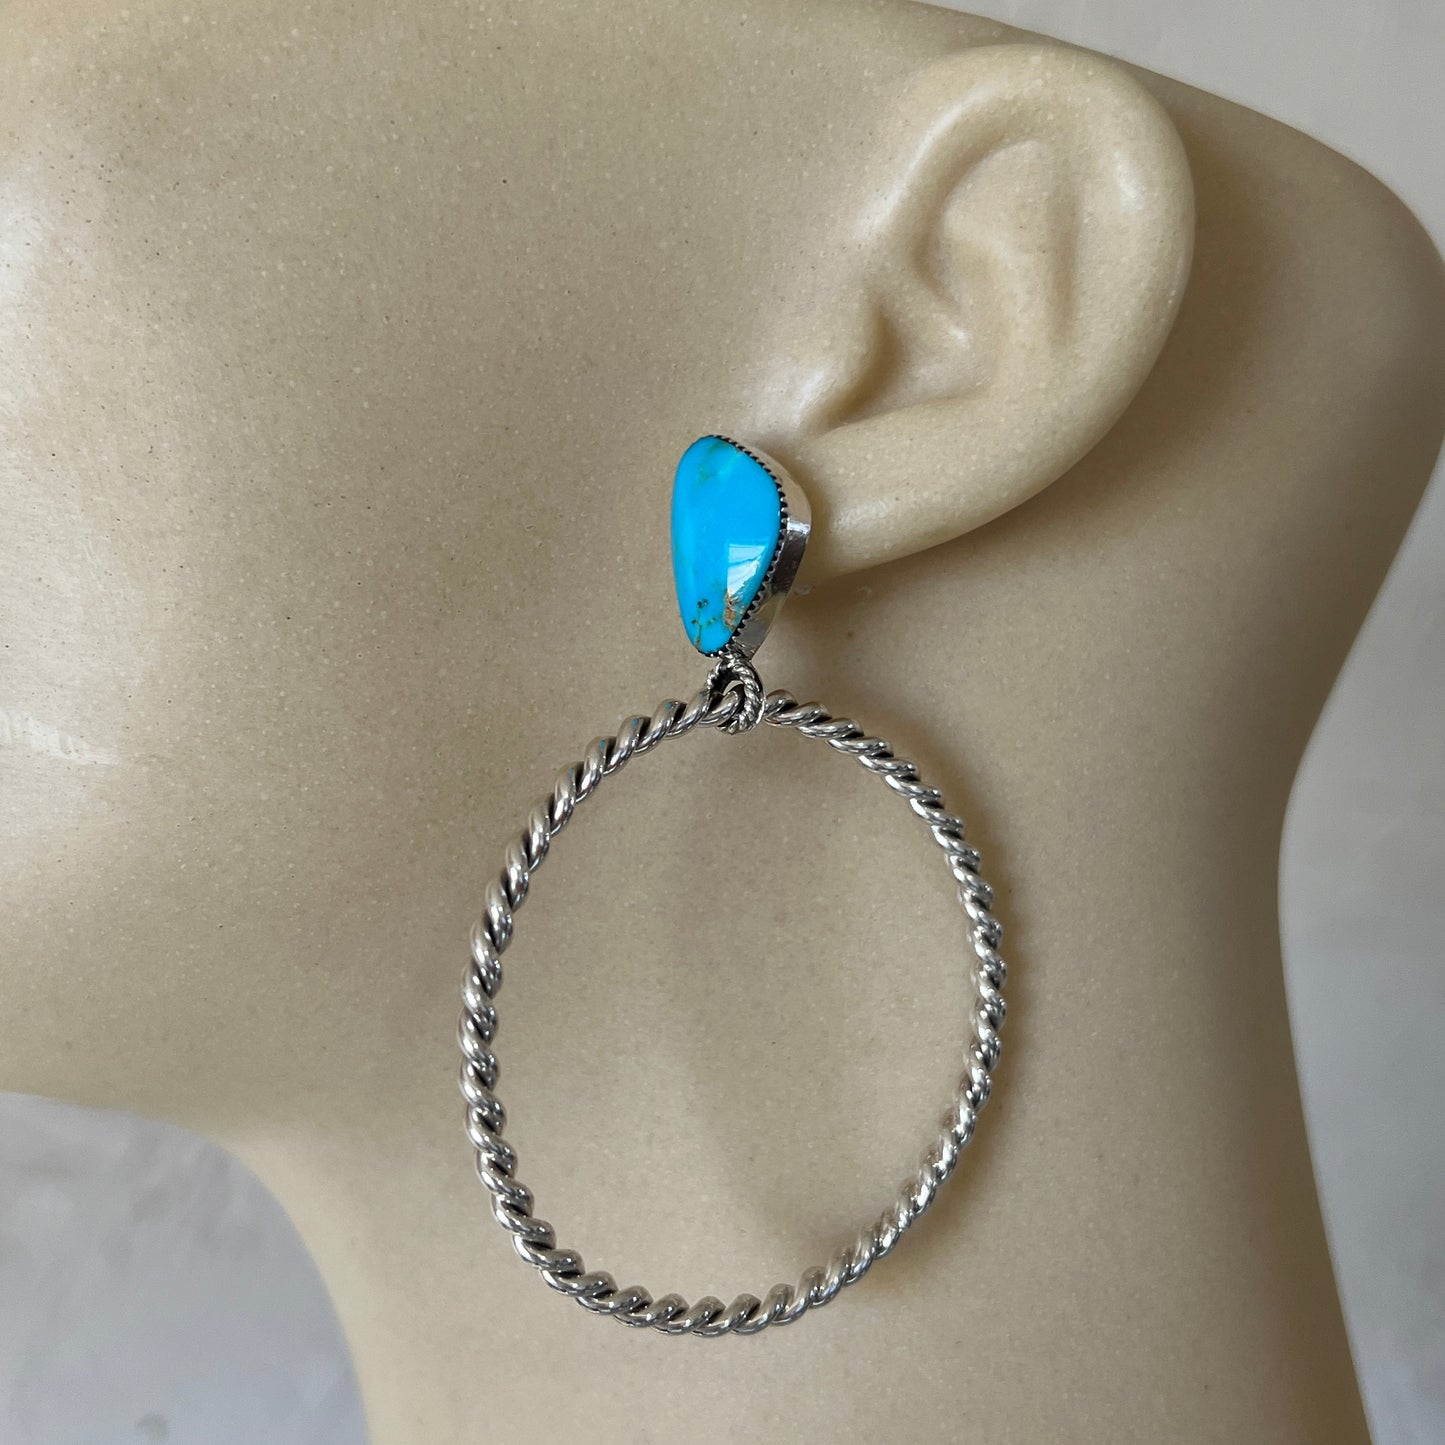 Blue Kingman turquoise hoop earrings, Navajo handmade, Jerome Lee #2, sterling silver post stud